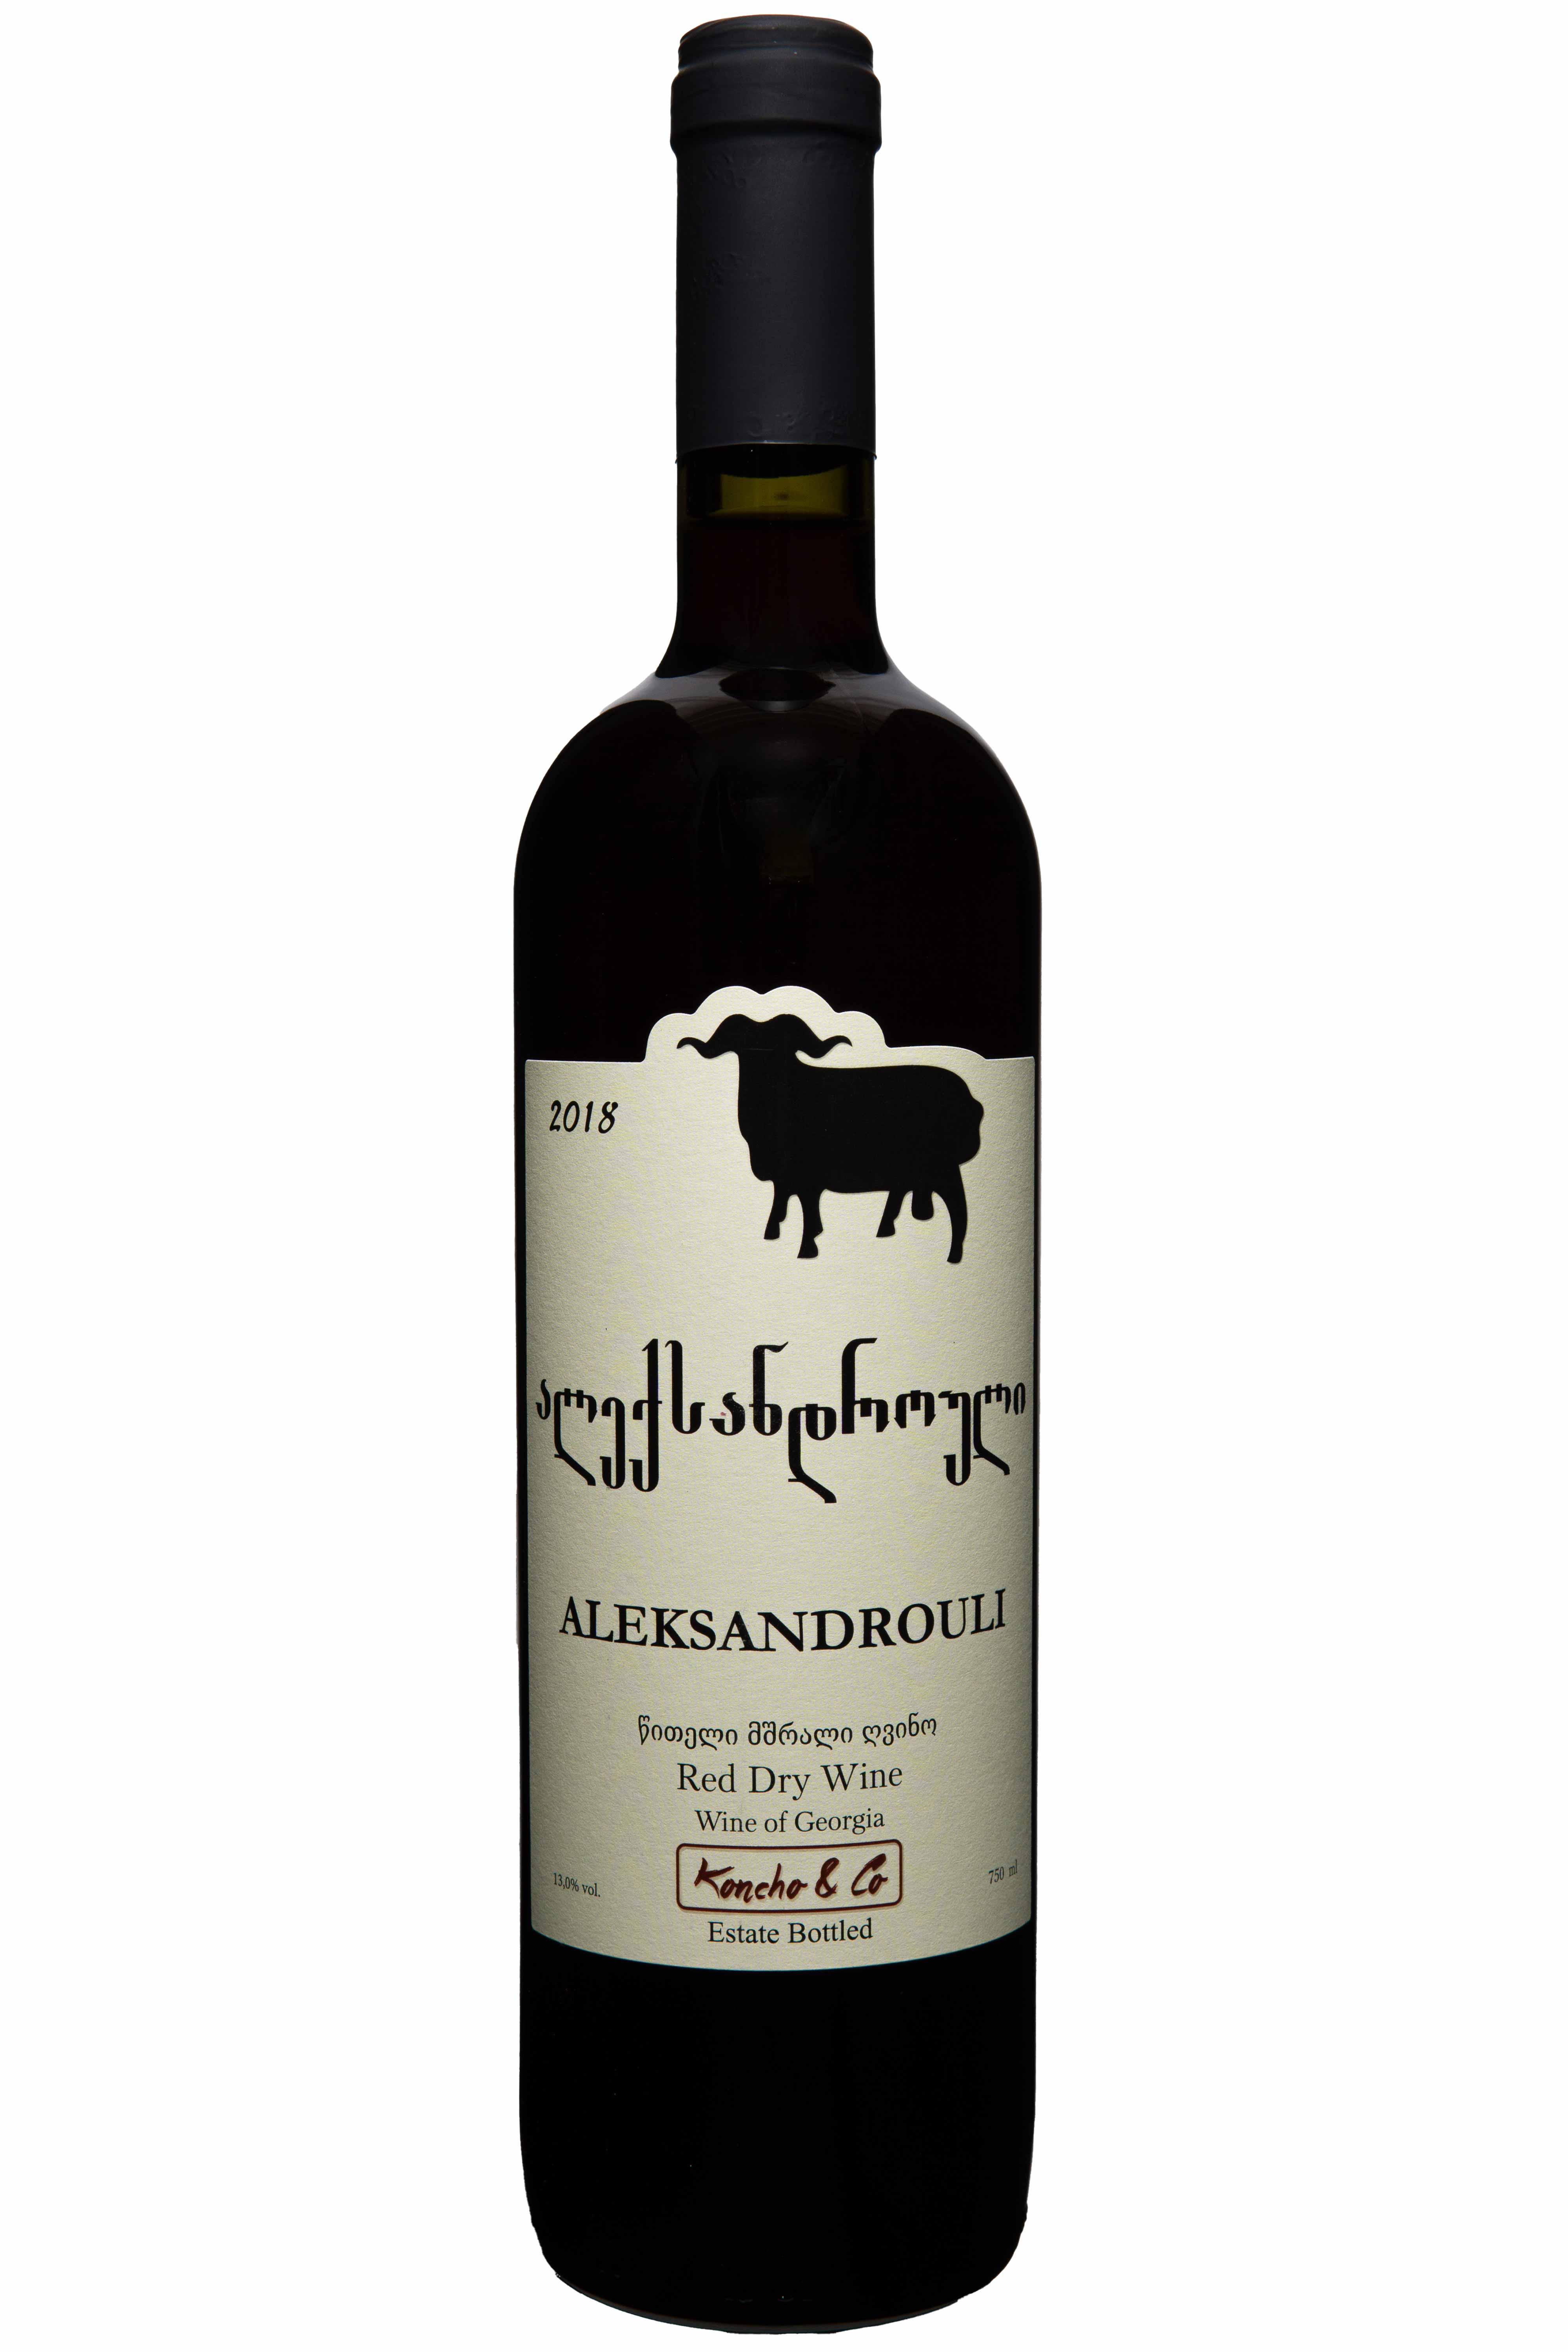 Ein Glas Koncho & Co. Aleksandrouli 2018, intensiver und reicher trockener Rotwein, traditionell in Georgien gekeltert.